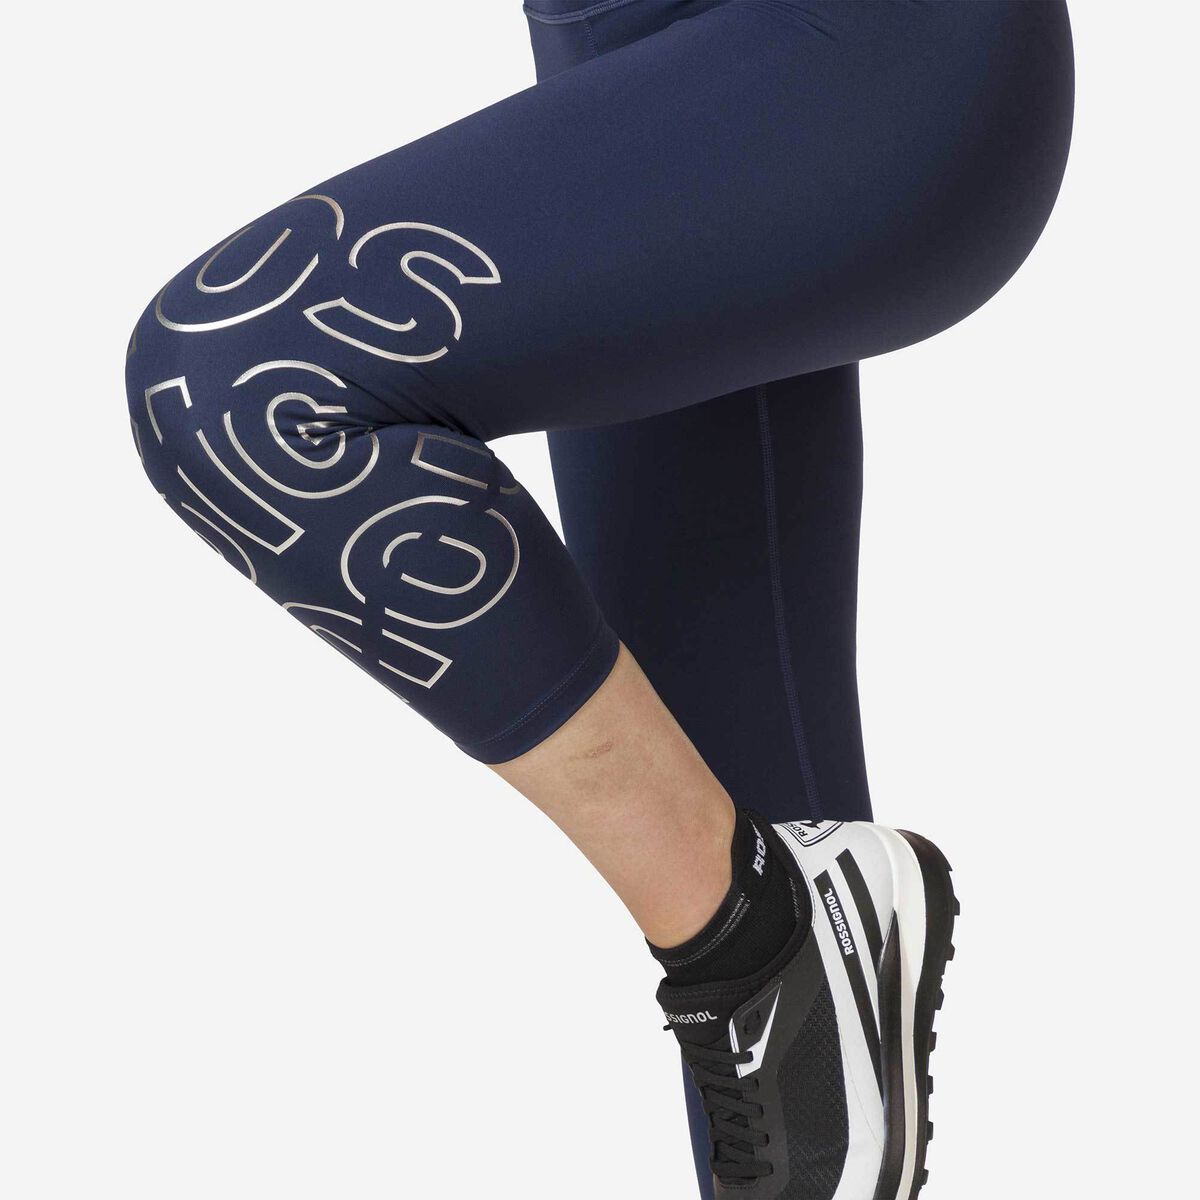 Rossignol Women's stretch 3/4 running tights, Pants Women, Dark Navy